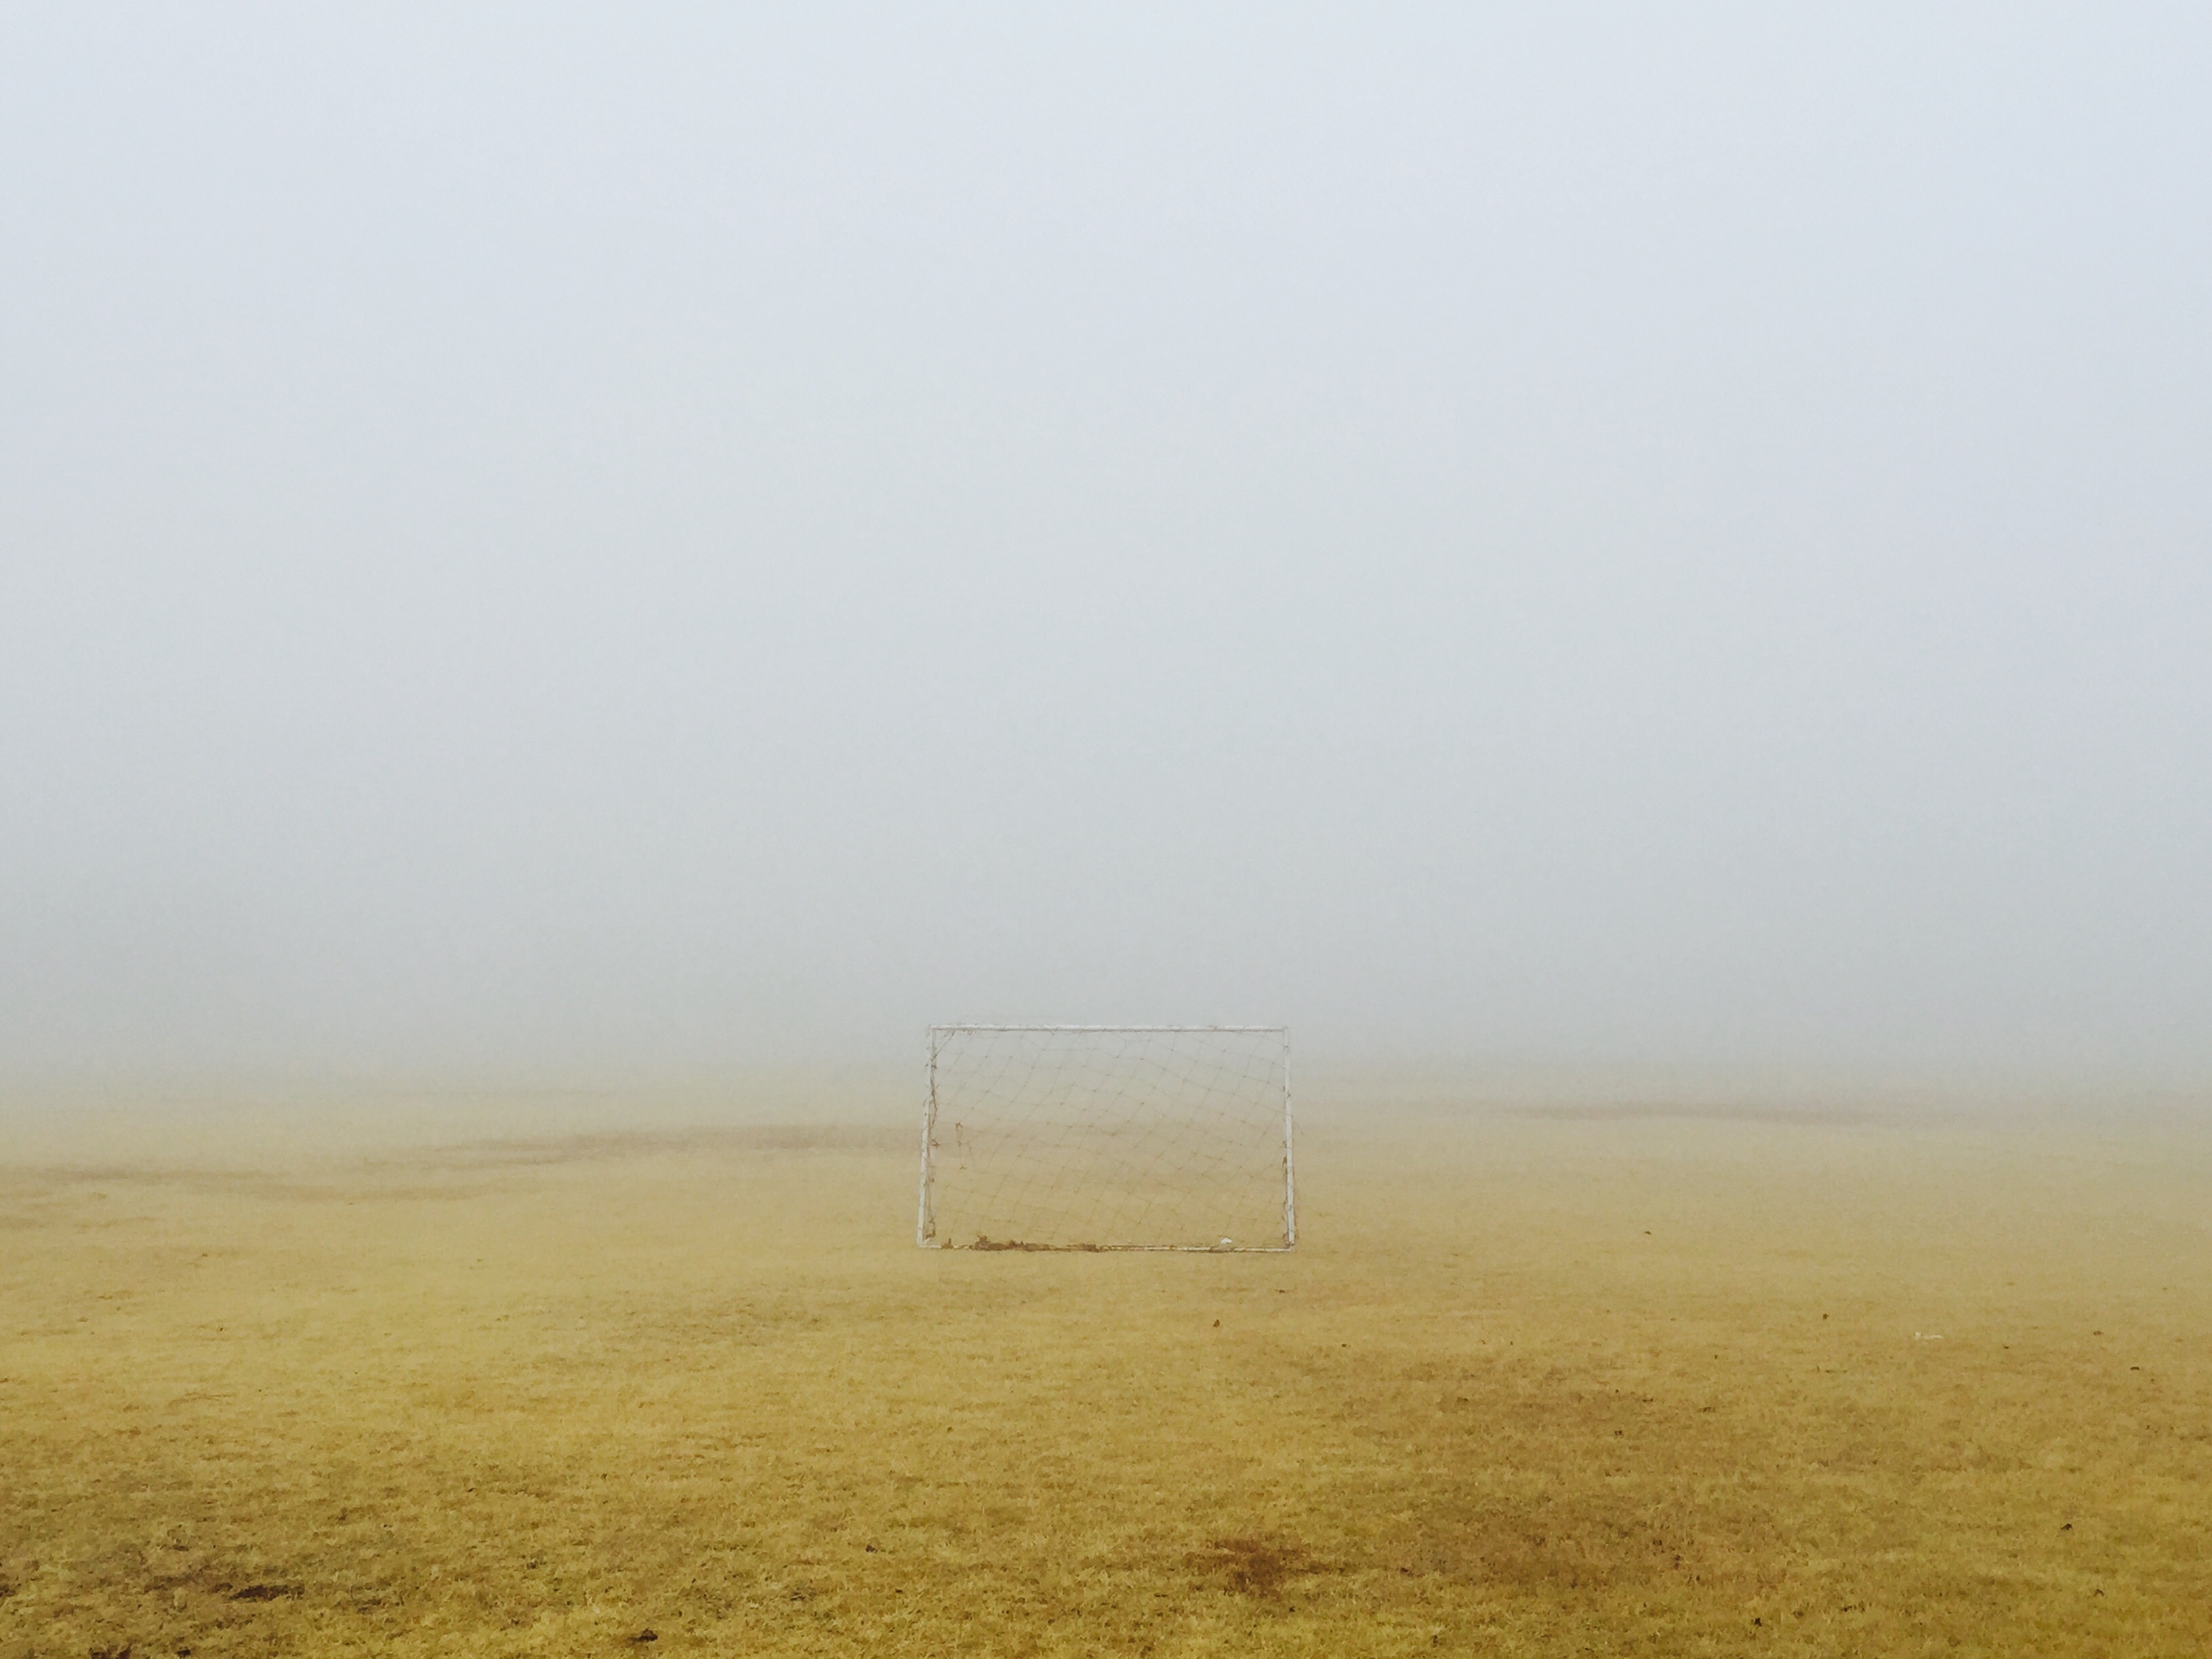 soccer net on green field